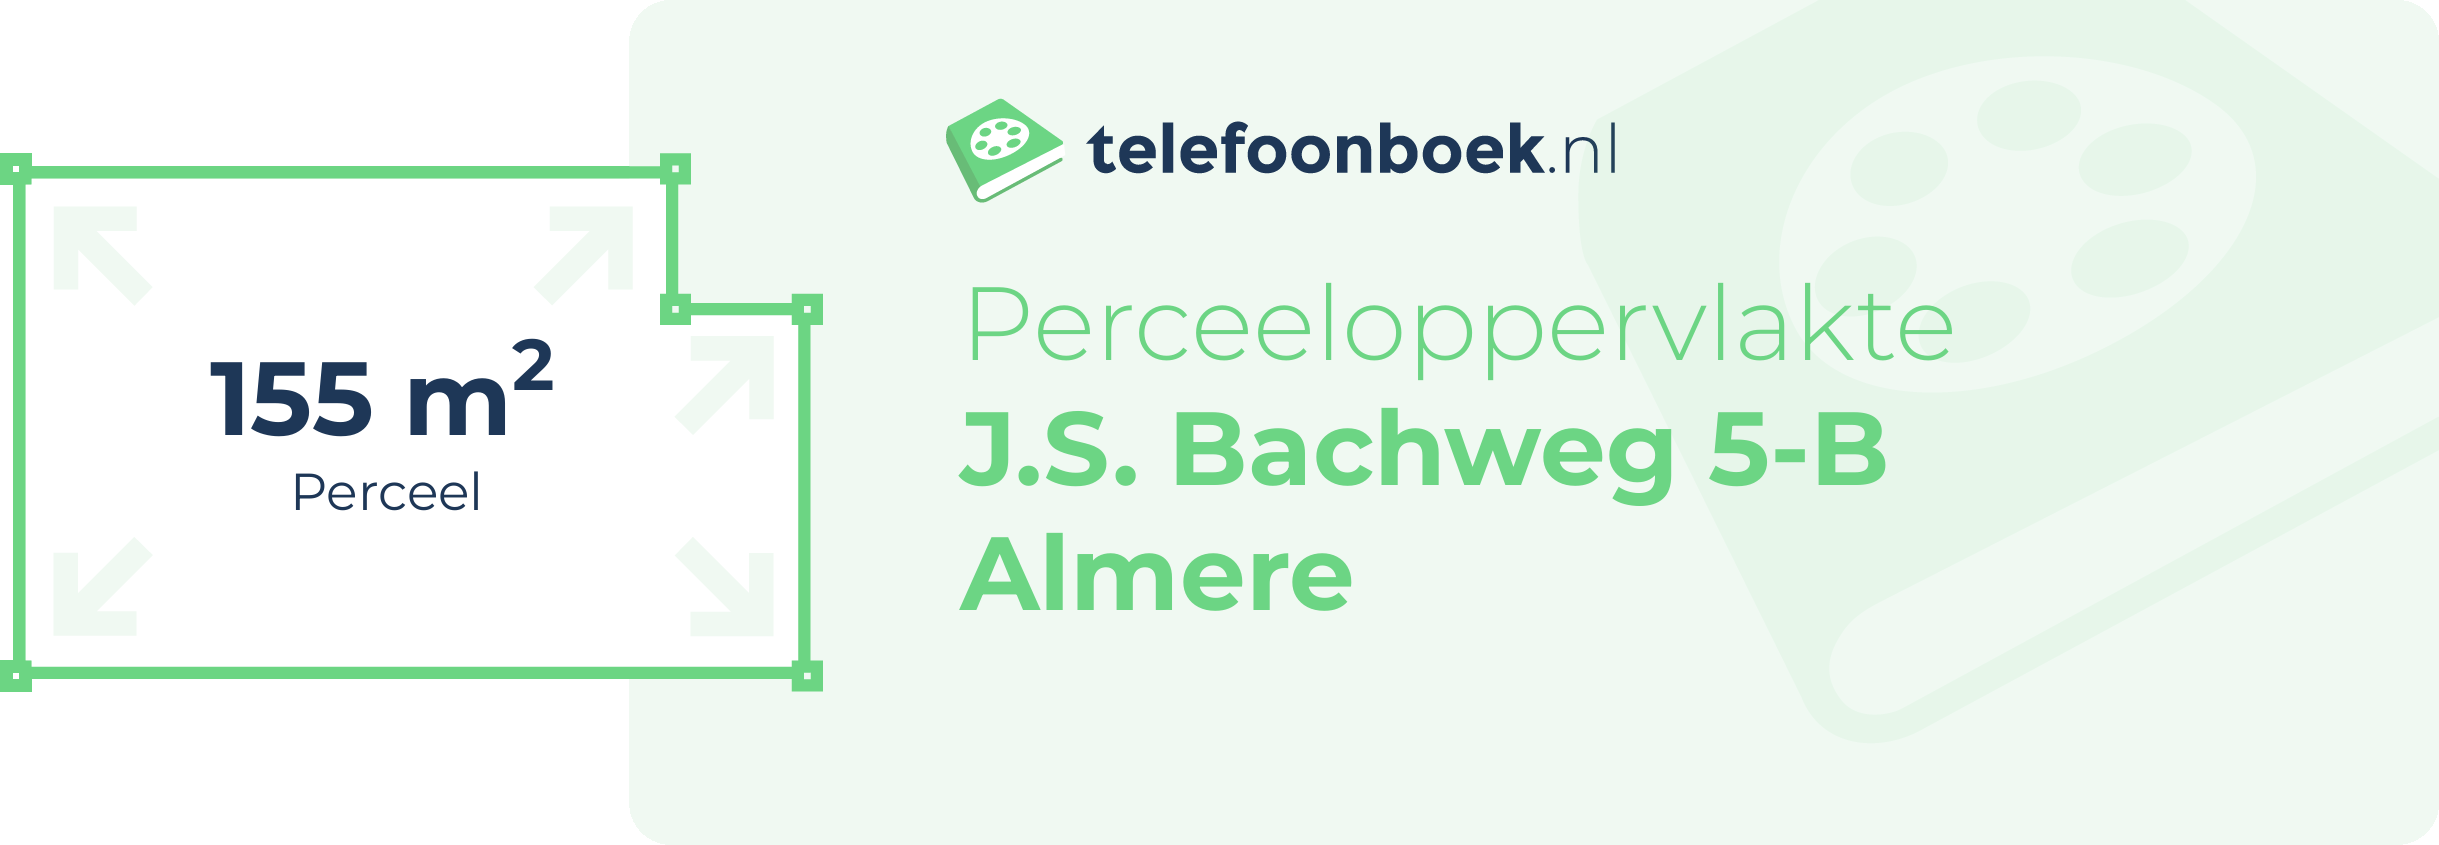 Perceeloppervlakte J.S. Bachweg 5-B Almere